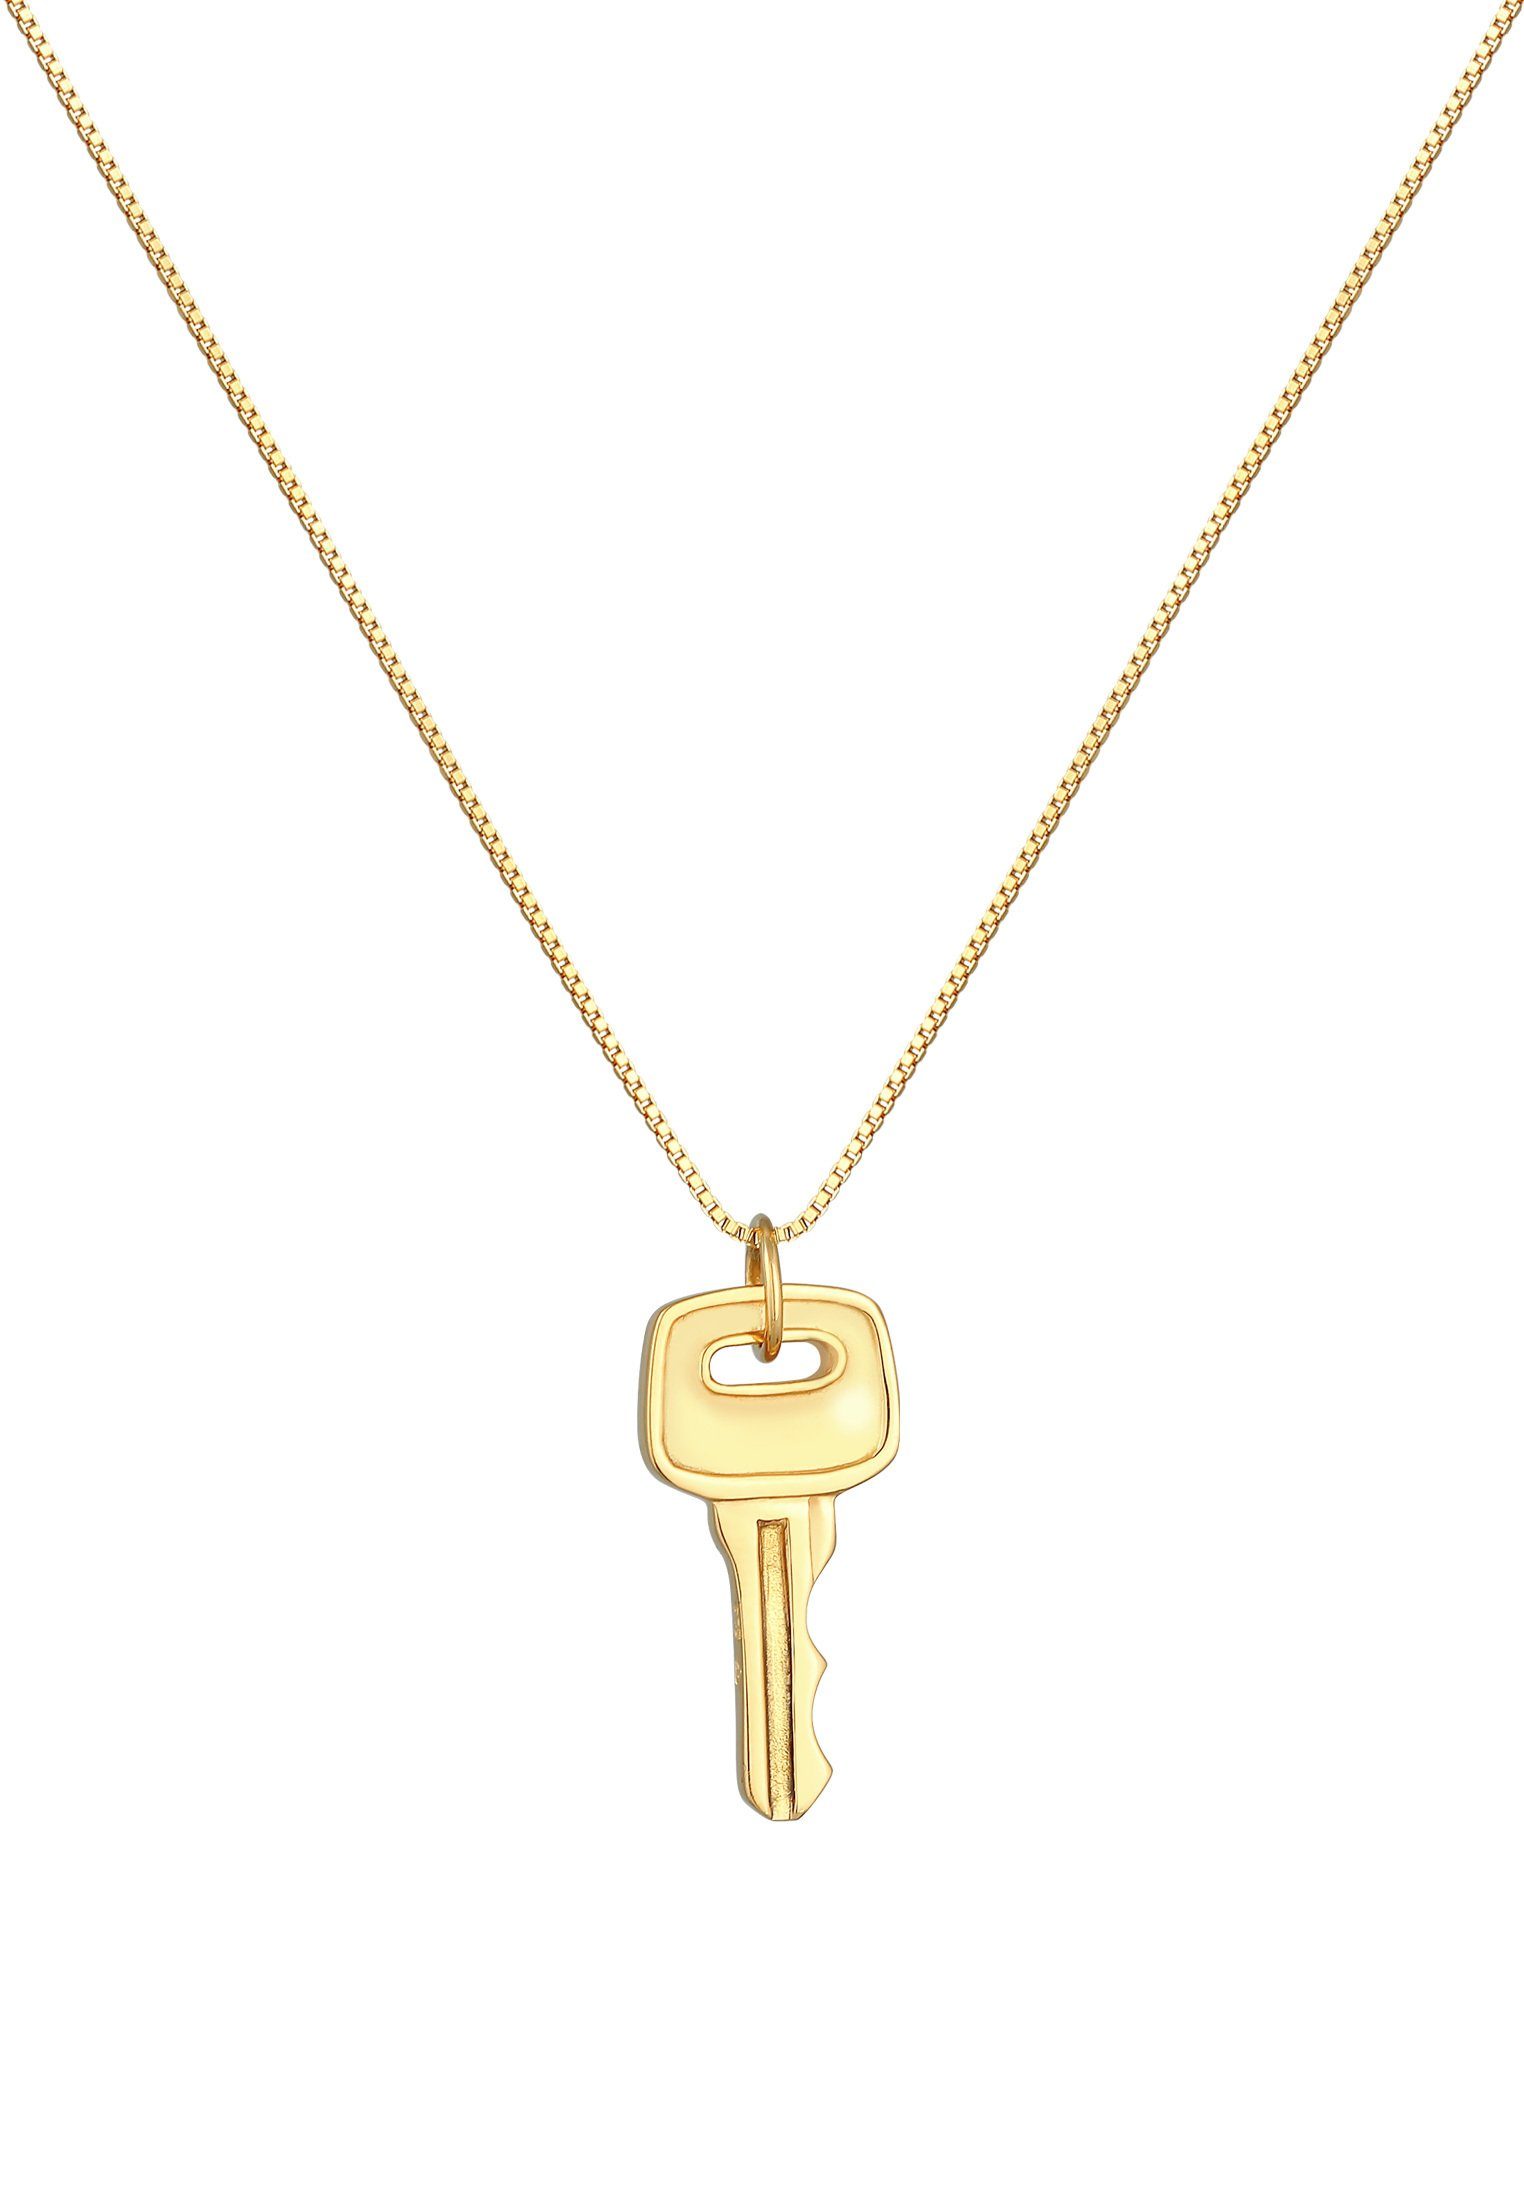 Kuzzoi Kette mit Anhänger Herren Schlüssel Key Venezianer Gold Silber 925